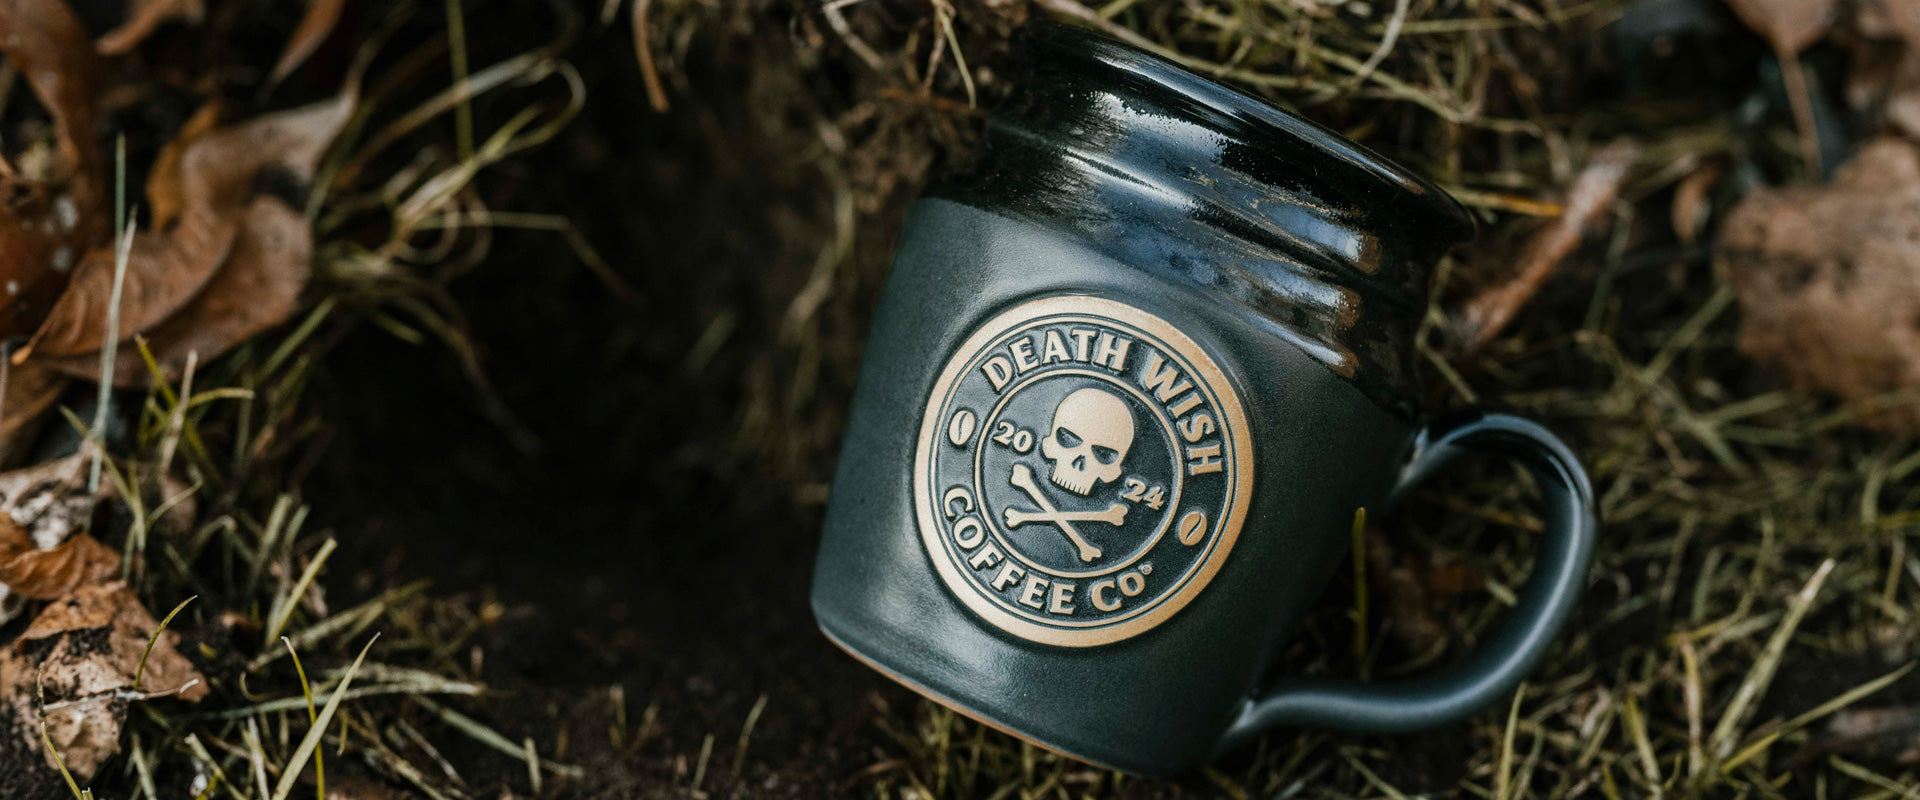 Coffee – Death Wish Coffee Company